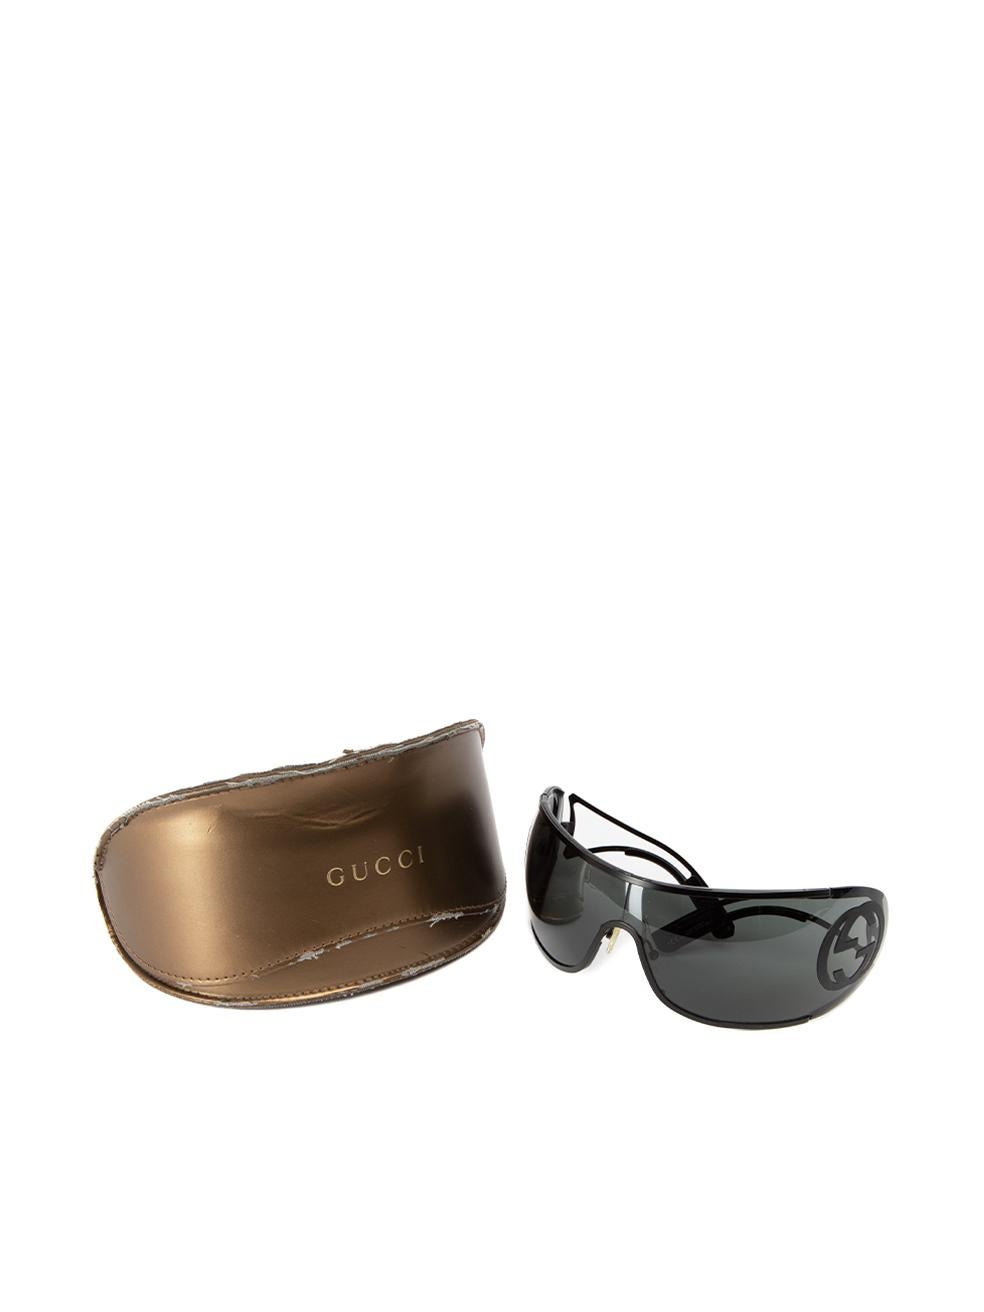 Pre-Loved Gucci Women's Black GG Shield Sunglasses 1